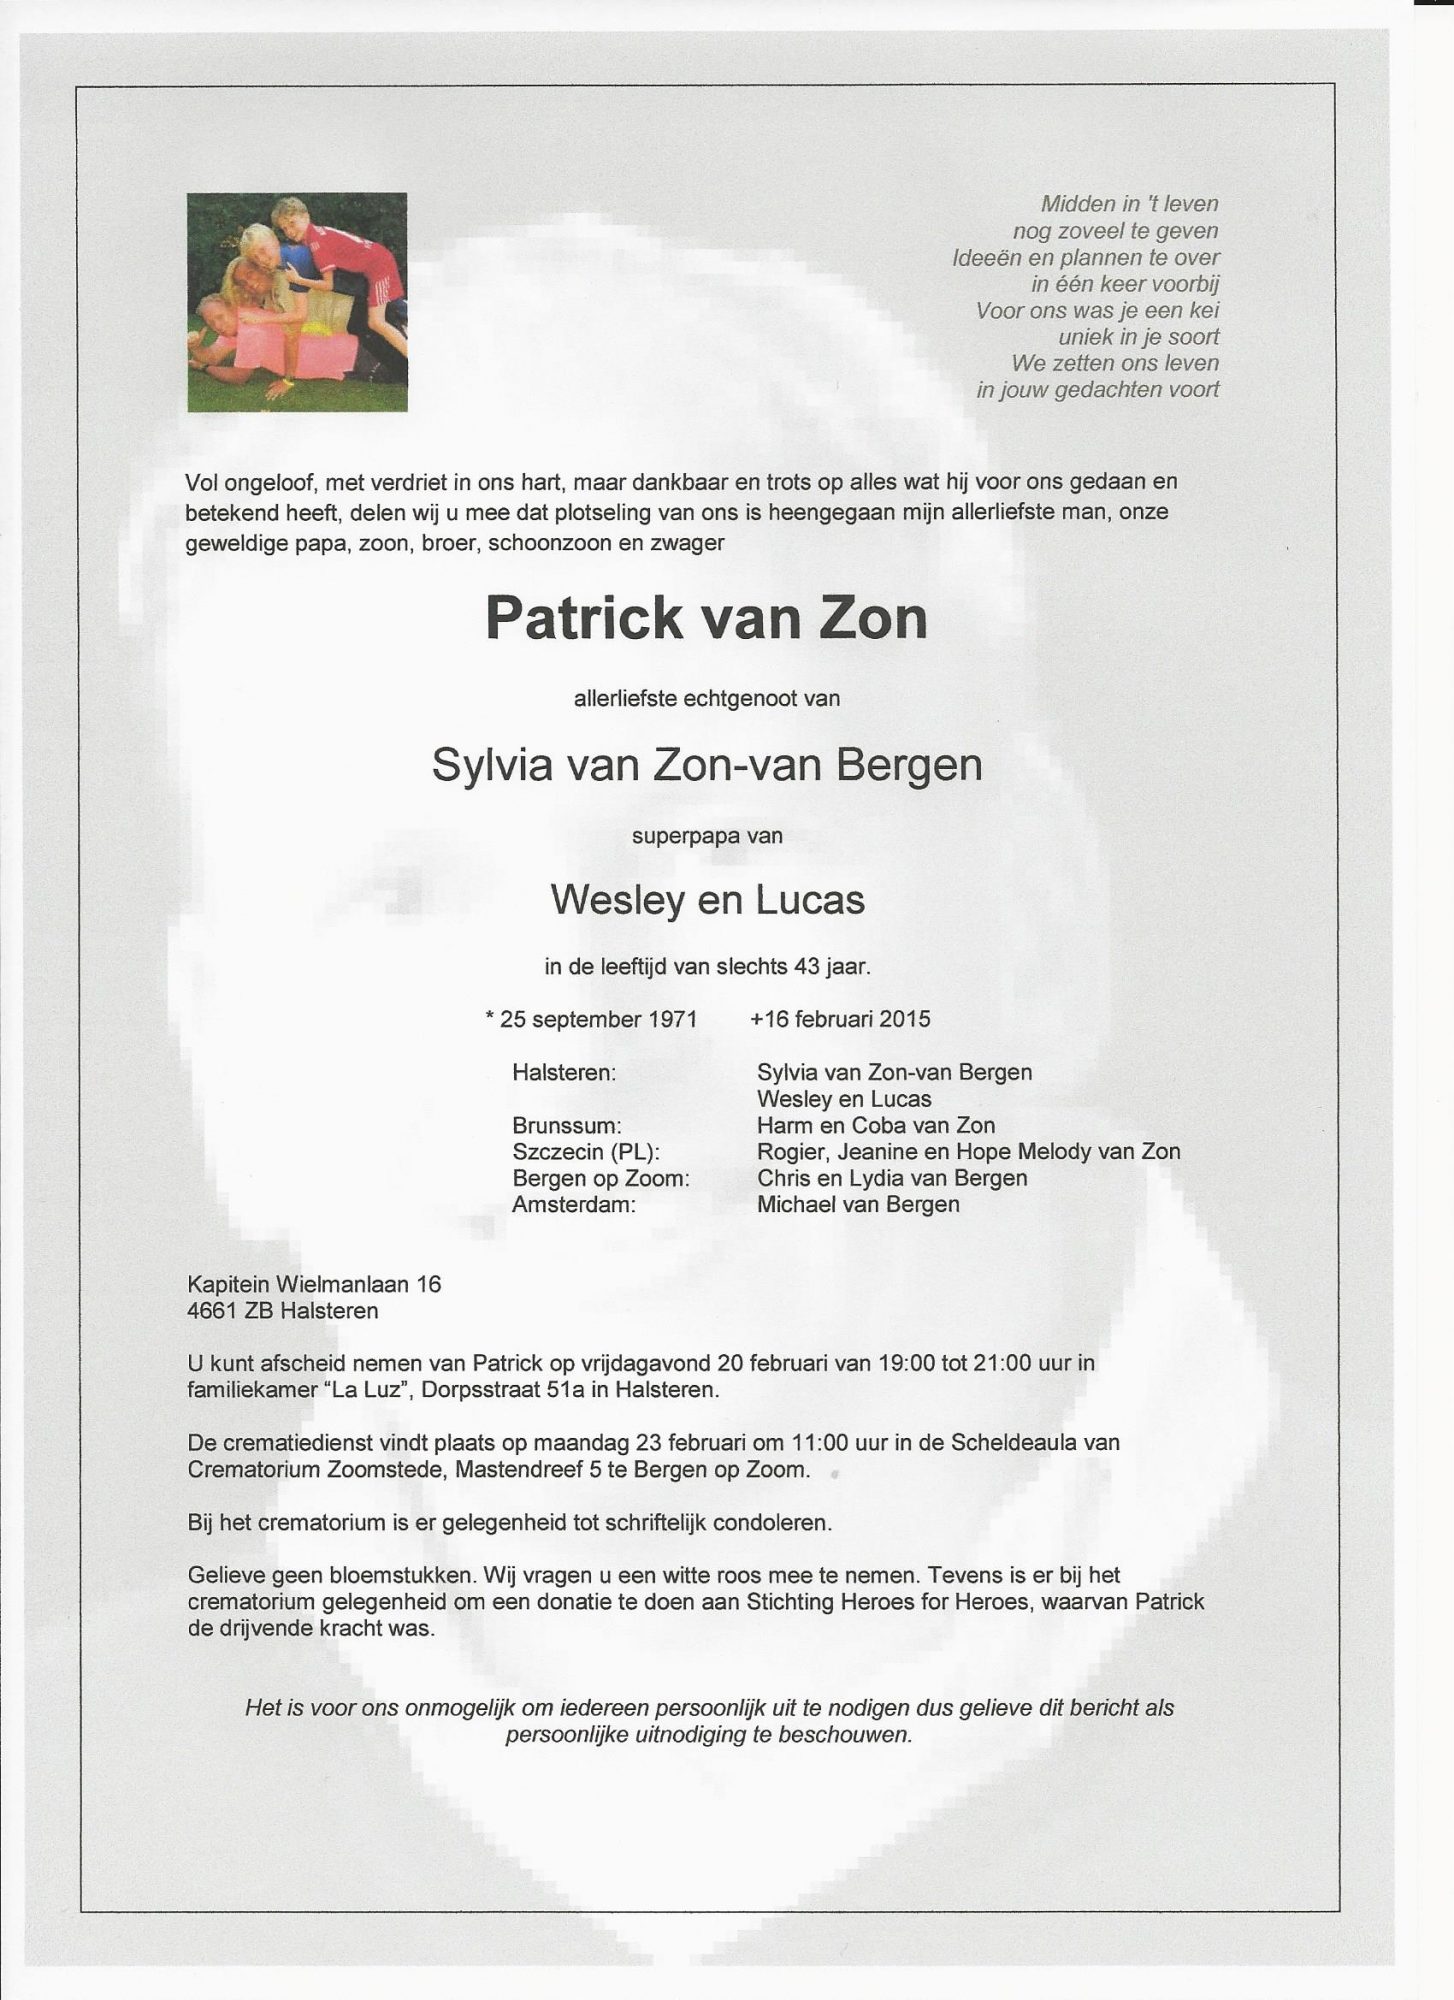 Rouwkaart Patrick van Zon